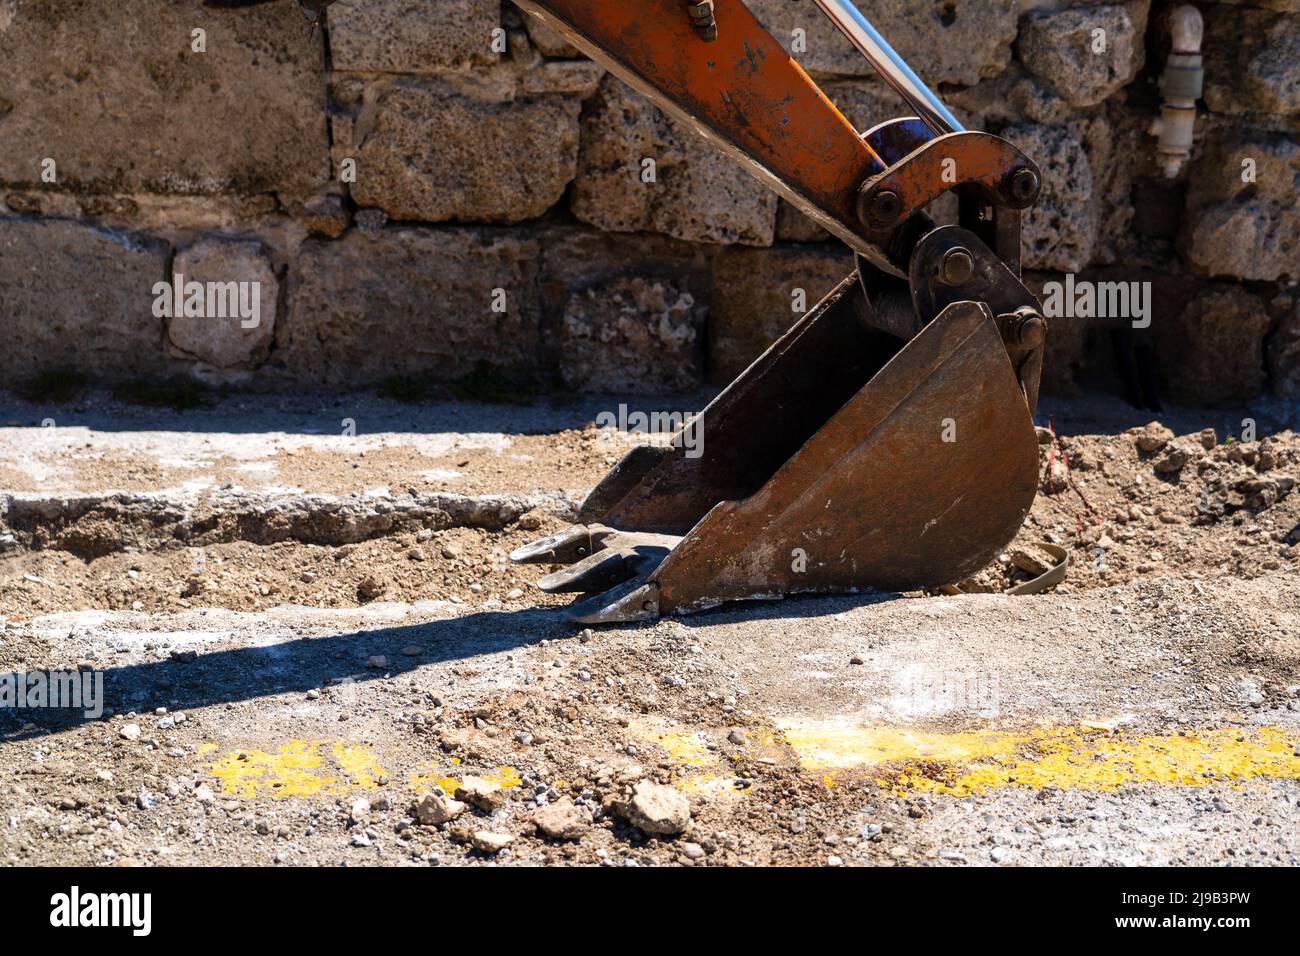 Las excavadoras penetran o se adhieren a la excavación en una carretera para fijar la misma tubería. Foto de stock